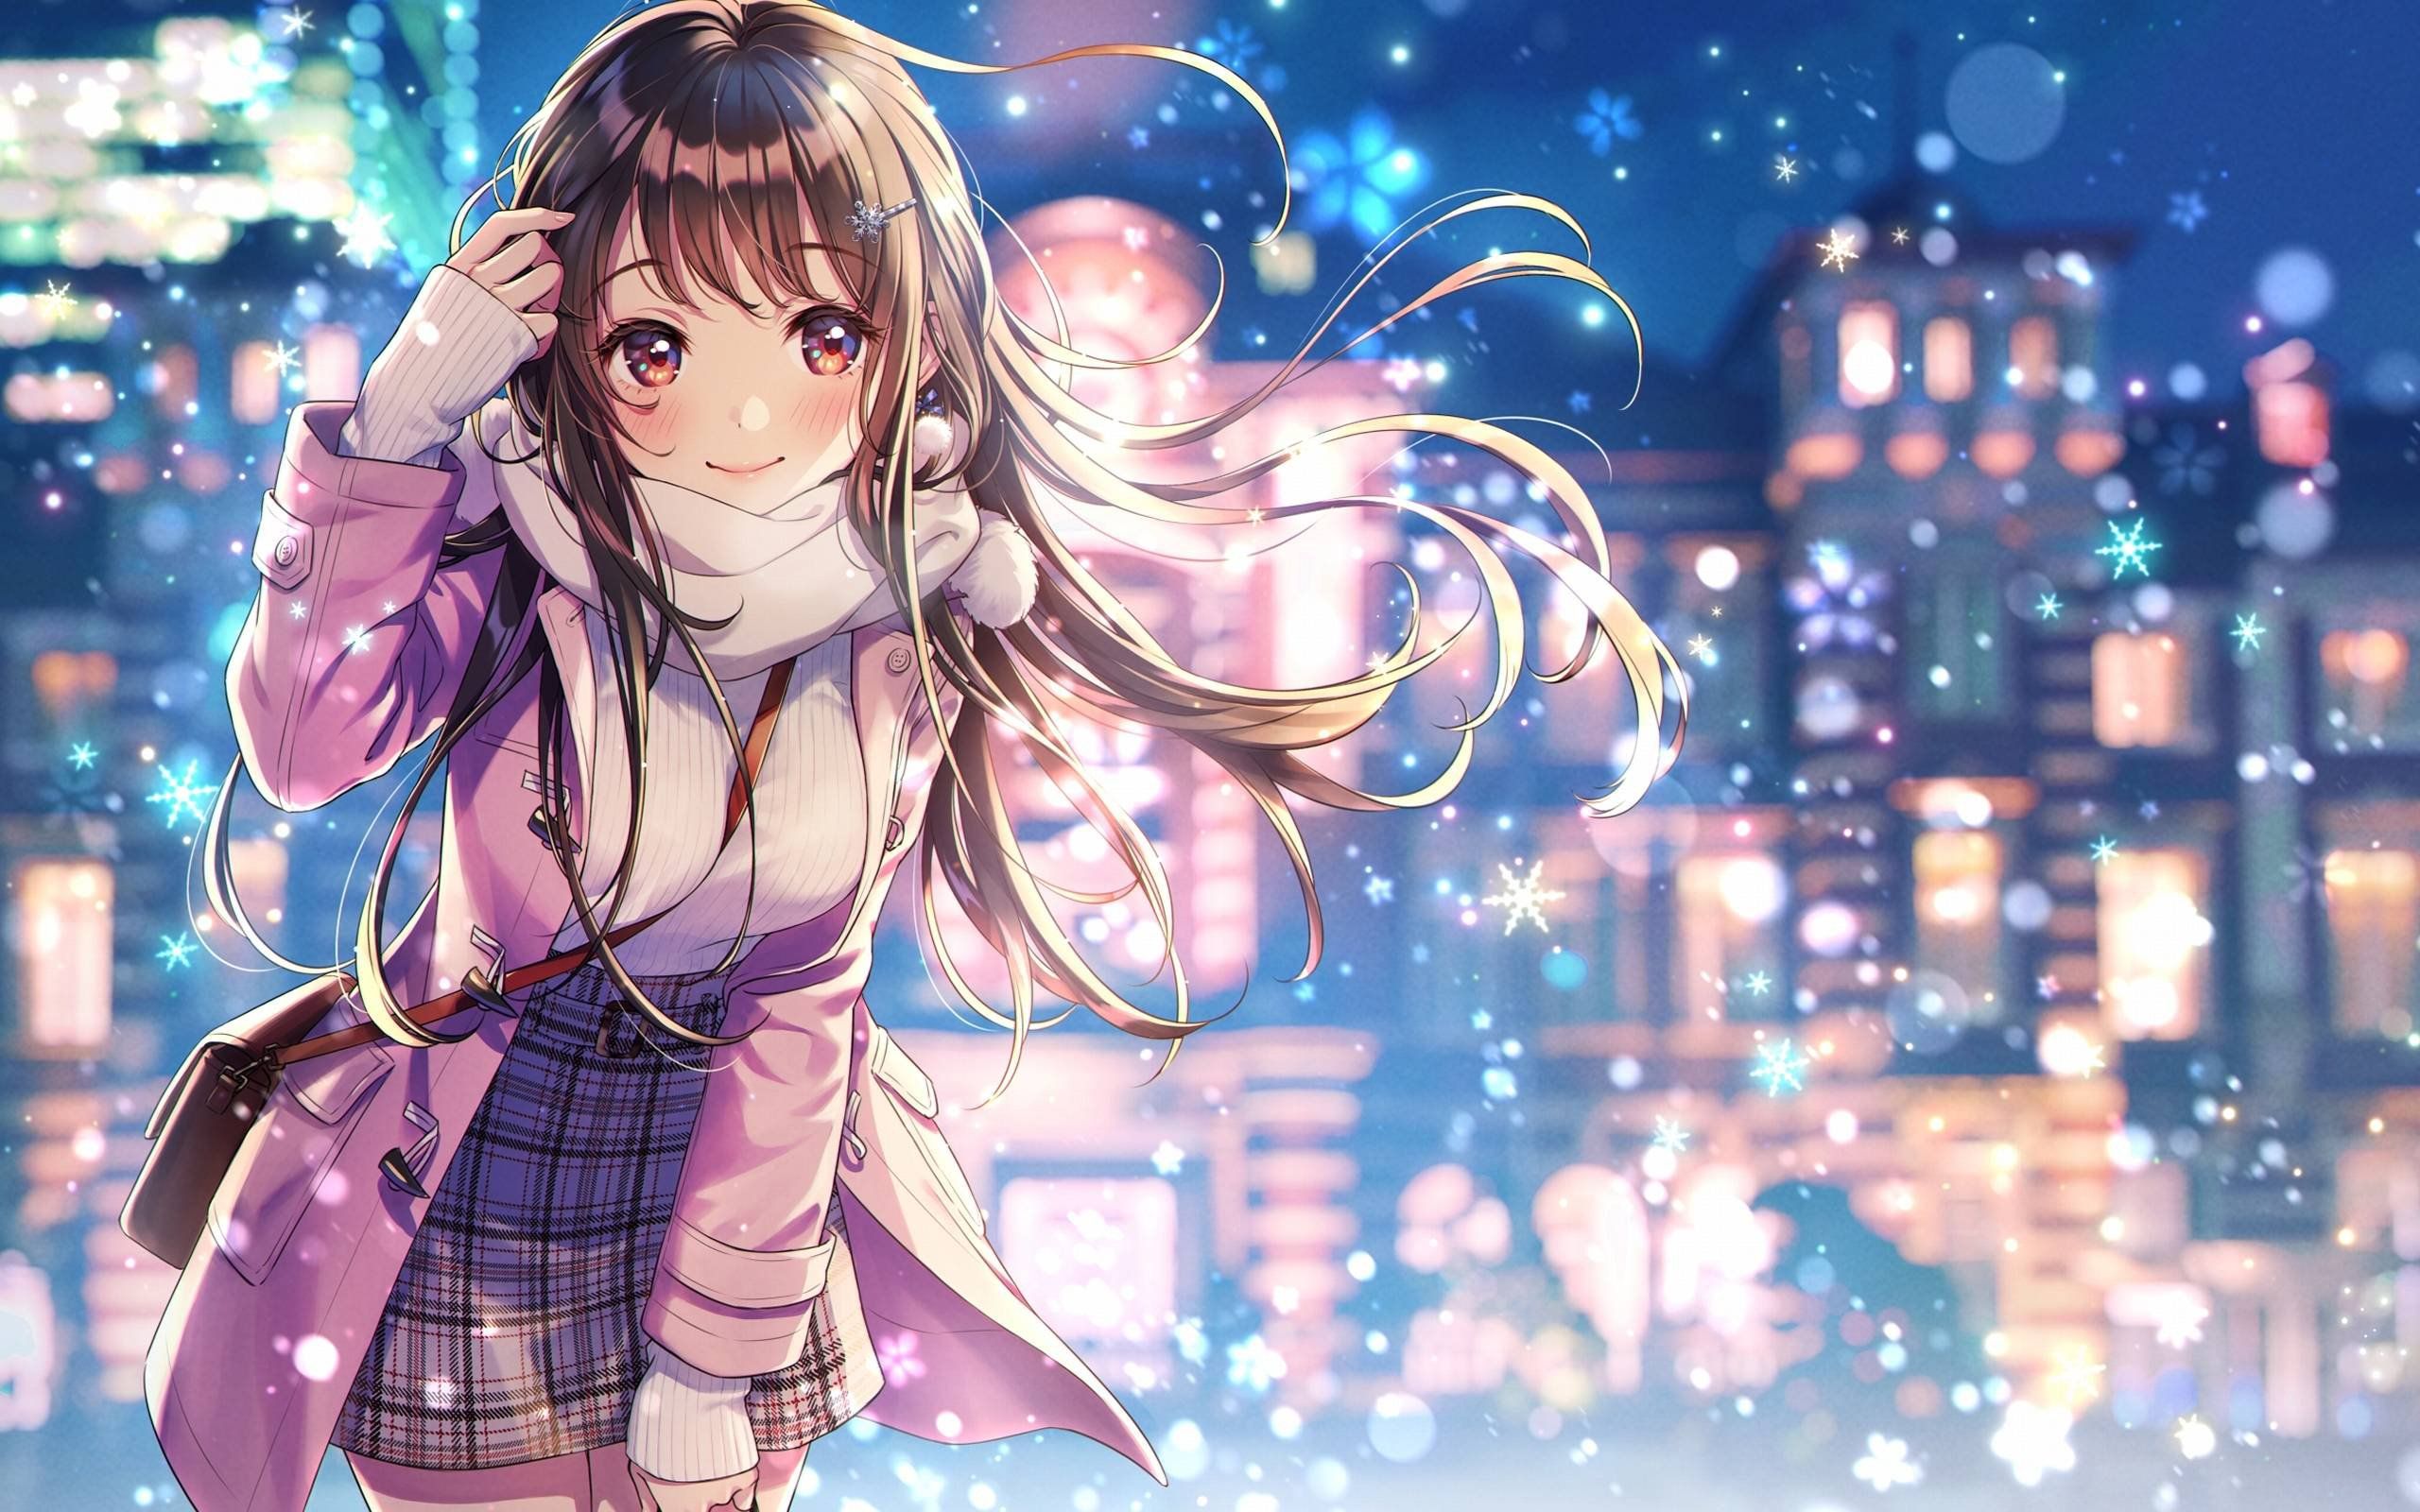 Wallpaper Anime girl, HD, Anime,. Wallpaper for iPhone